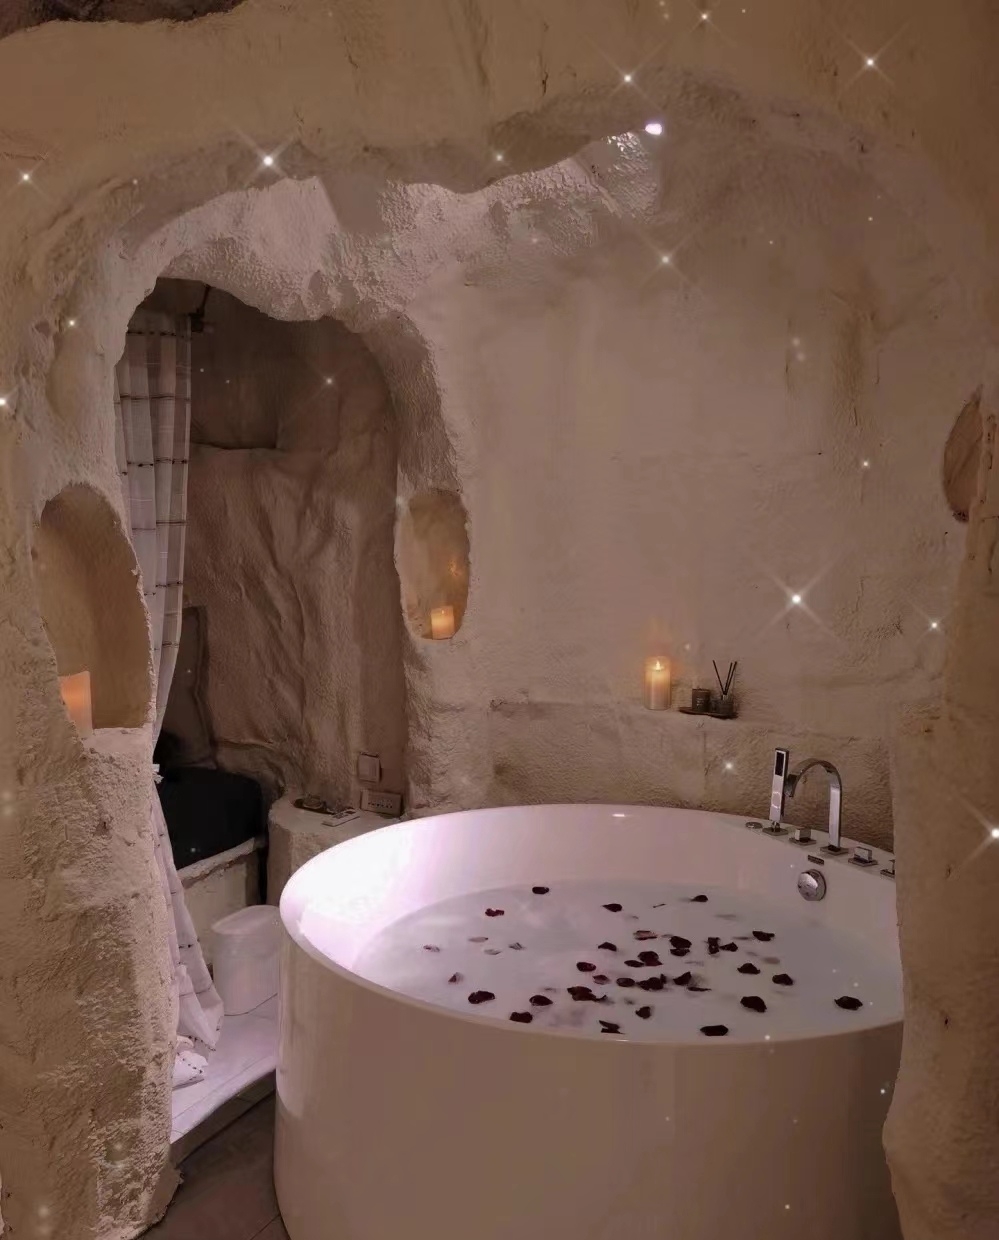 #隐居避世酒店 一定要跟女朋友住这家洞穴浴缸民宿❤️ 光这个浪漫双人浴缸，光想想就窒息啦 拍照真的特